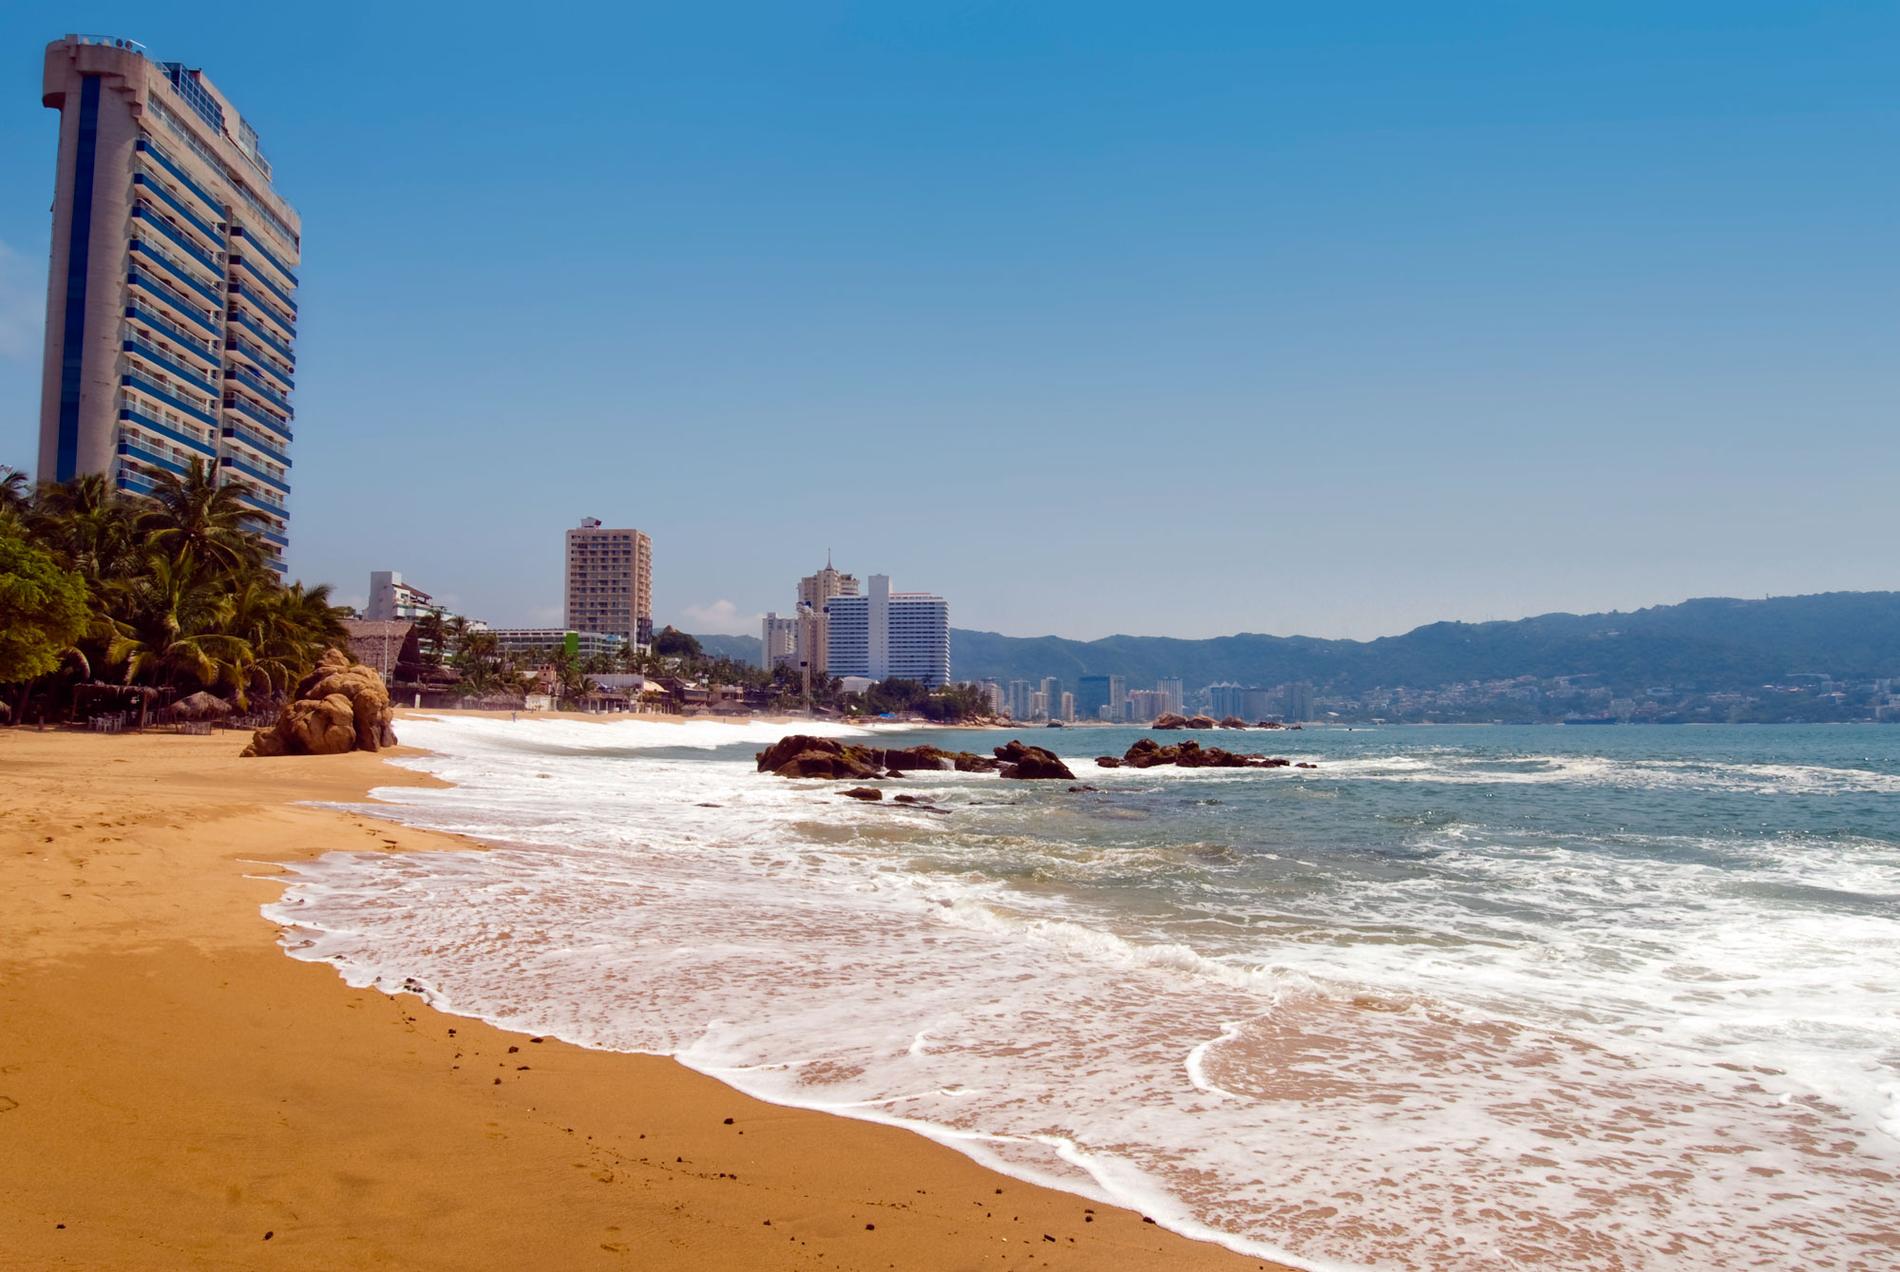 Jetset-kändisarna flockades på Acapulcos stränder på 1950- och 60-talet. Nu flyr turisterna.